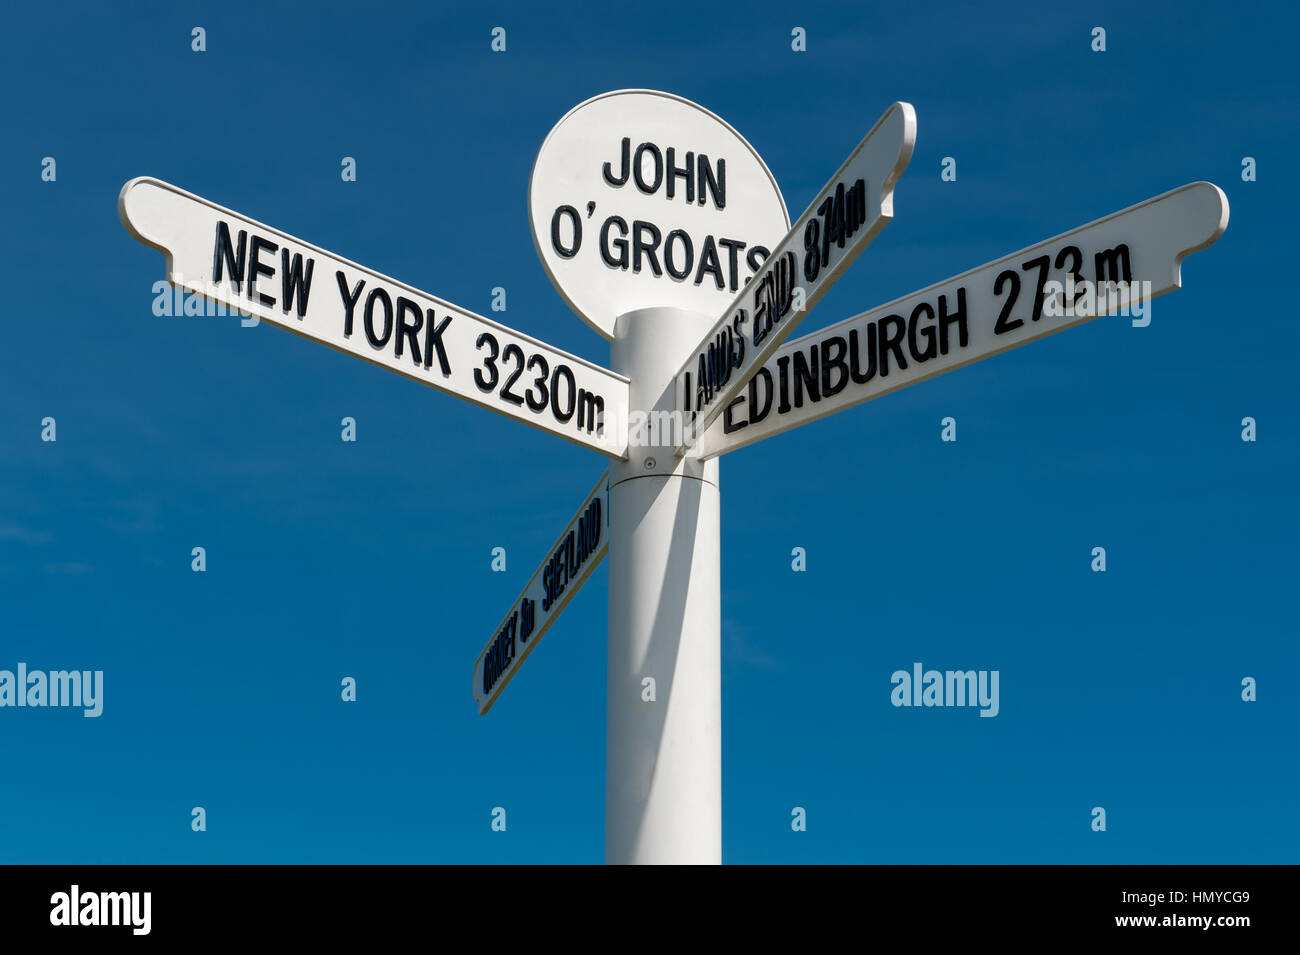 Il milepost segno a John O Groats nelle vicinanze Caithness in Scozia il la maggior parte del nord punta orientale del Regno Unito. Foto Stock